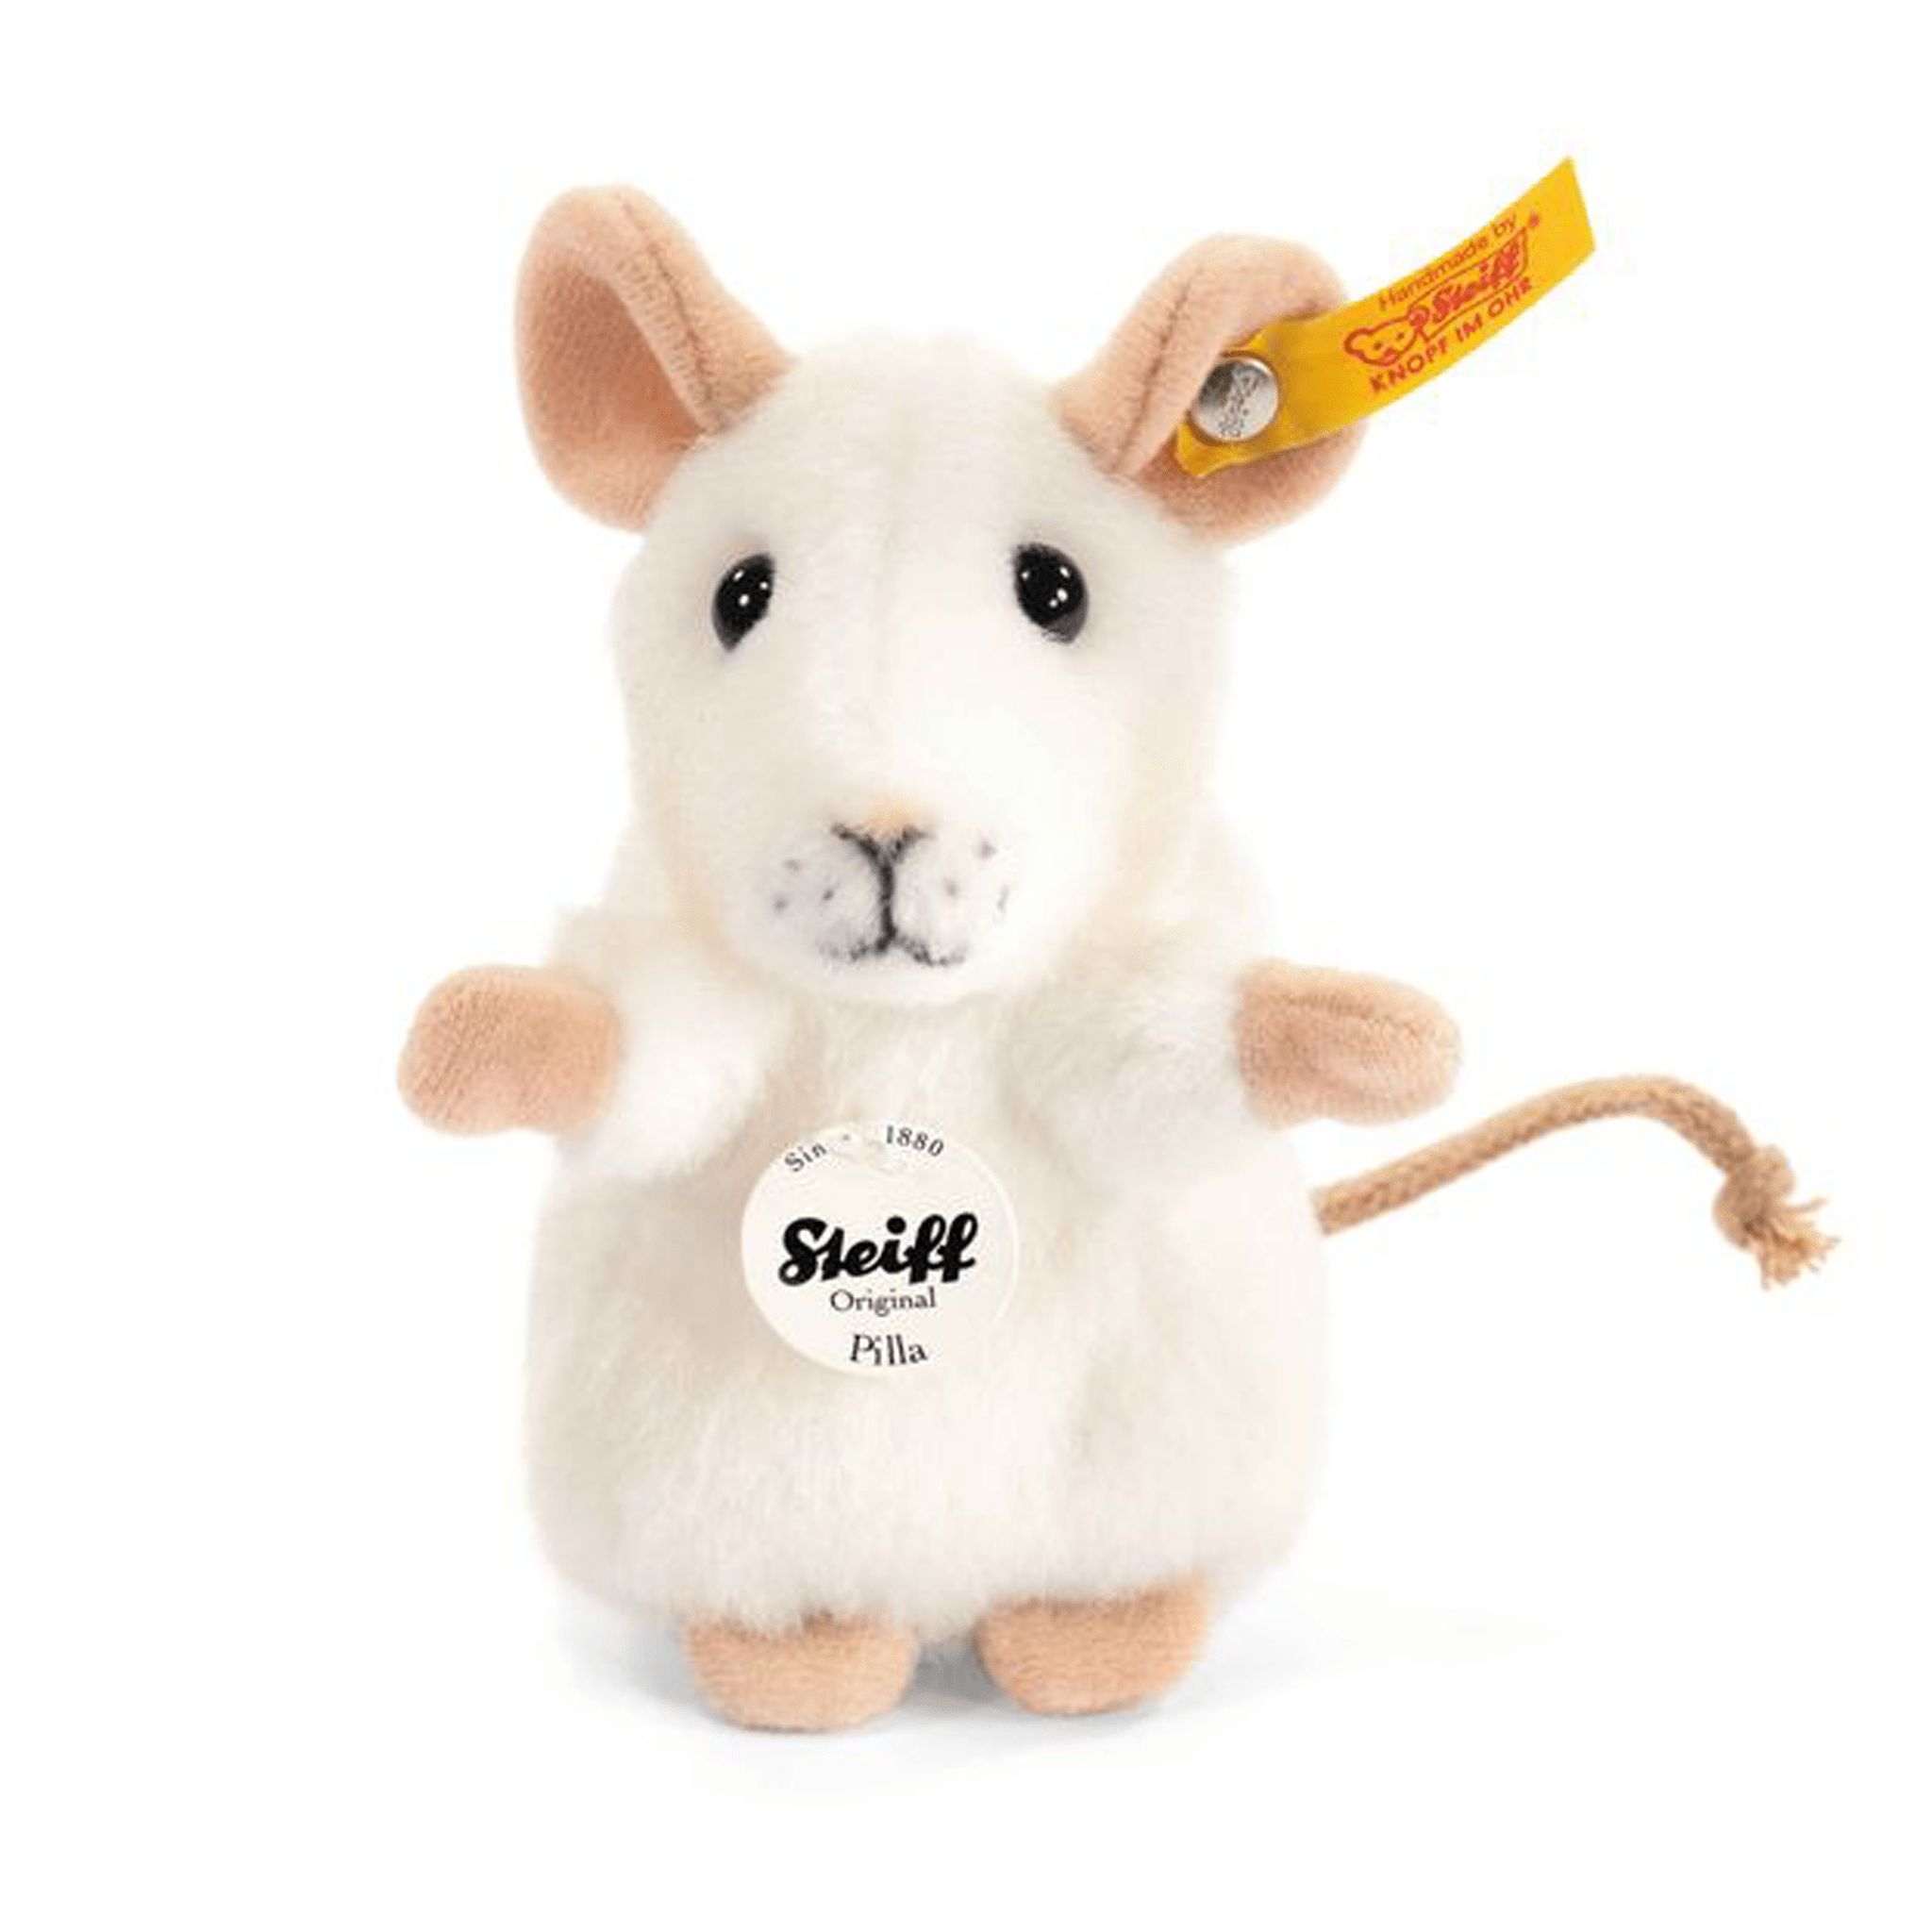 Steiff soft animals Steiff Pilla Mouse White 056215